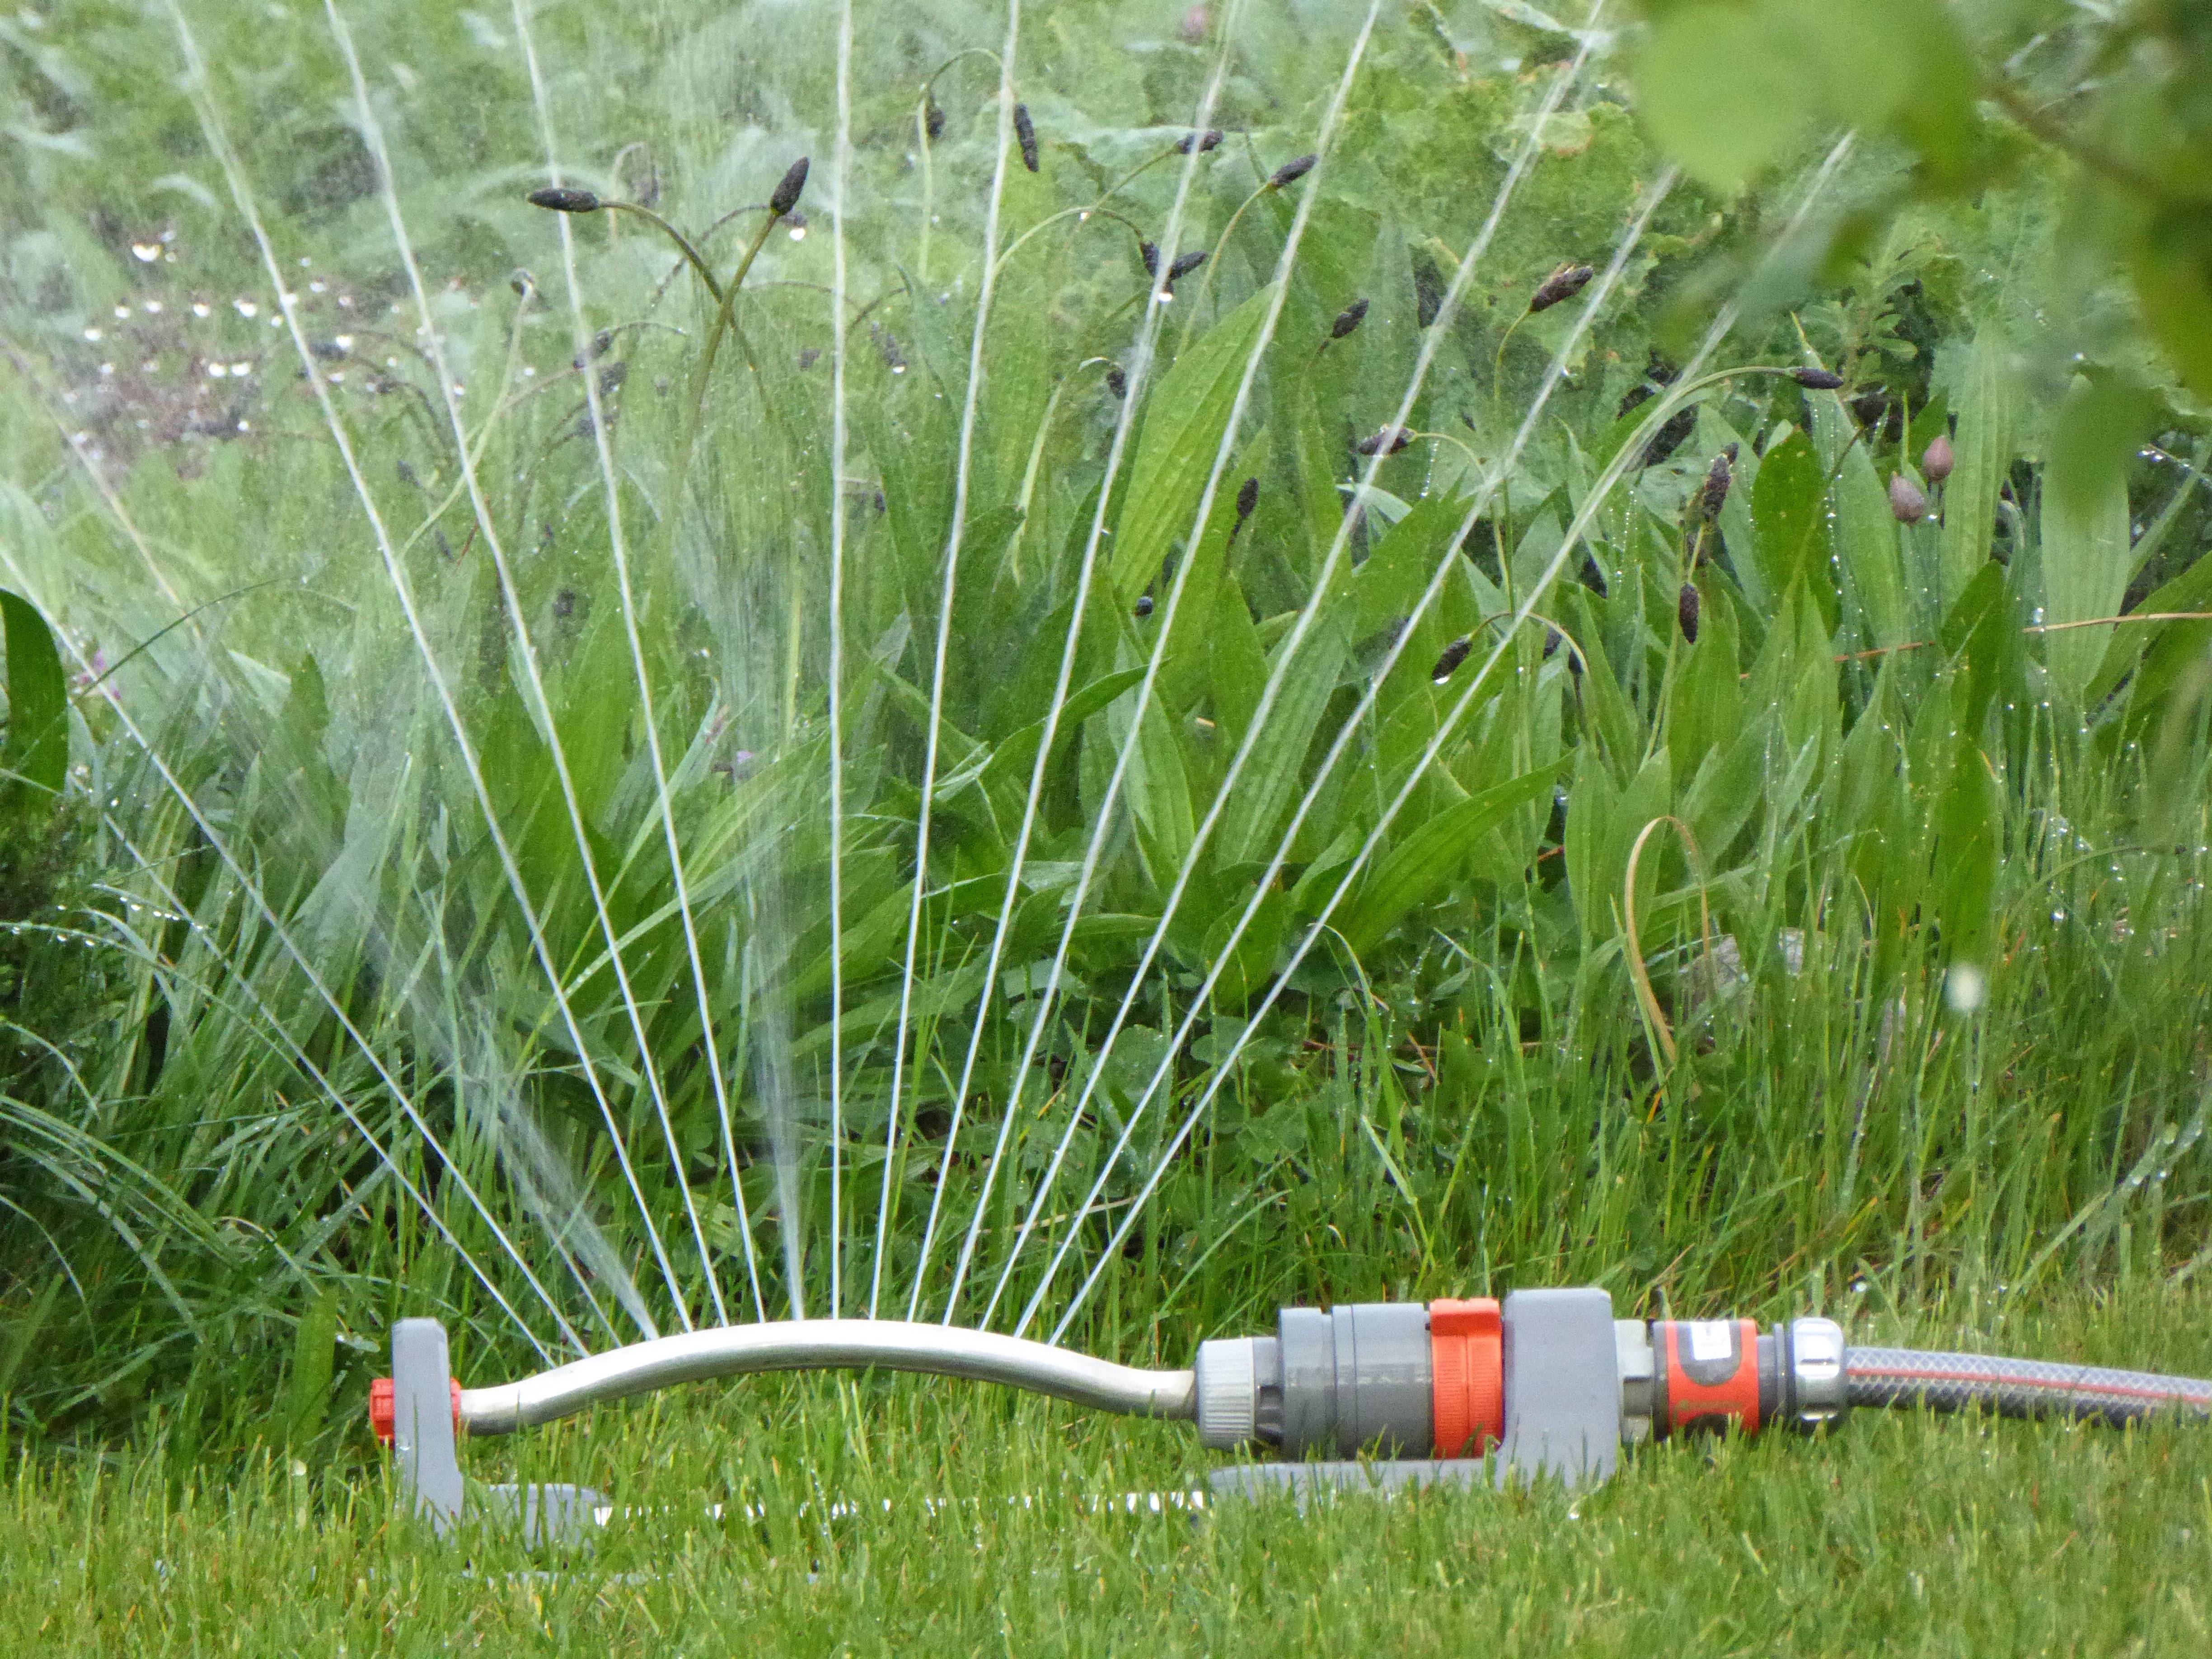 Водичка для газона: нормы, правила и советы по поливу